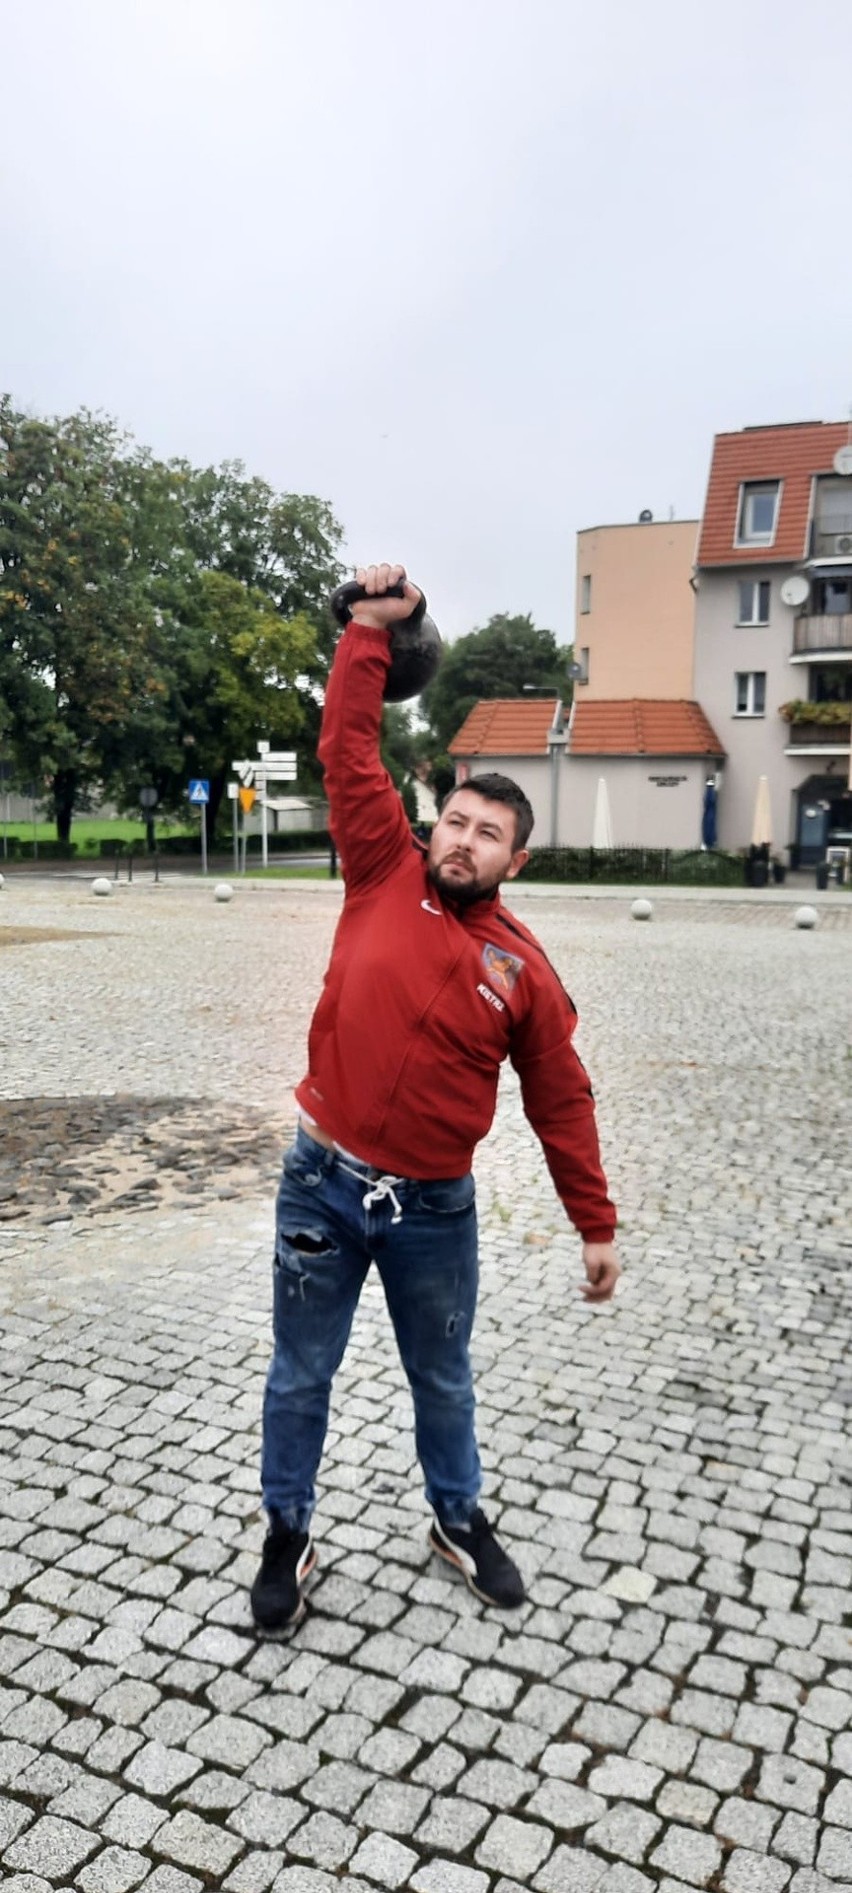 Michał Tichanów, czyli strongman z Kietrza i trener personalny, opowiedział nam, jak zadbać o tężyznę fizyczną